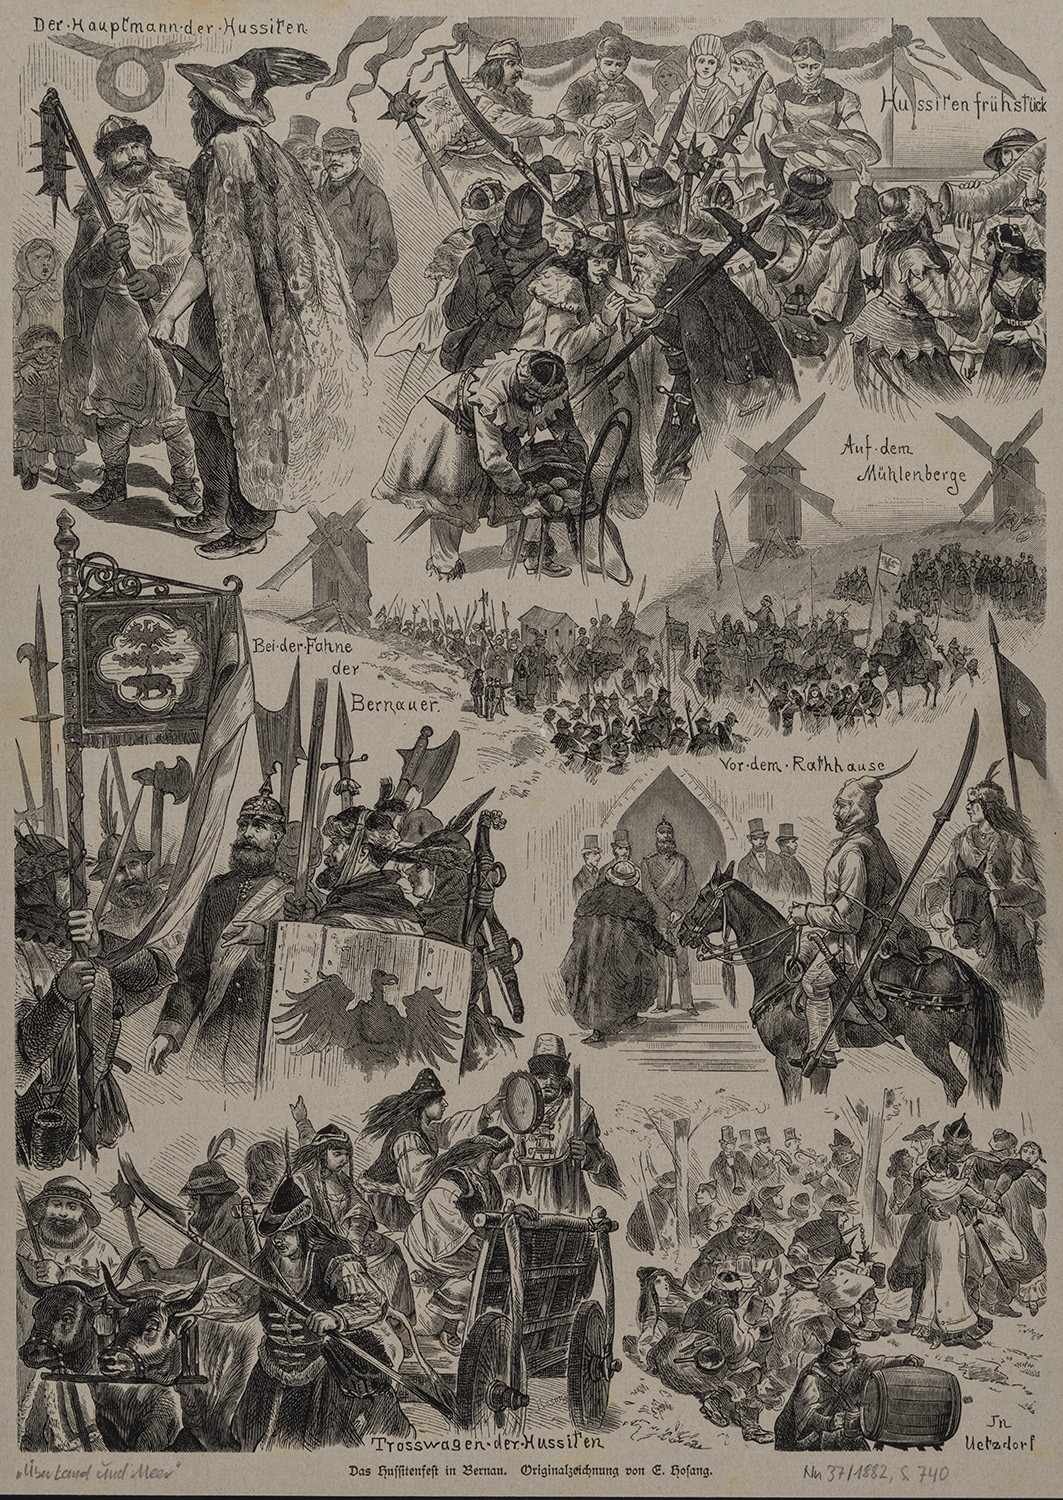 Bernau (Kr. Niederbarnim): Illustrationen des Hussitenfestes (Landesgeschichtliche Vereinigung für die Mark Brandenburg e.V., Archiv CC BY)